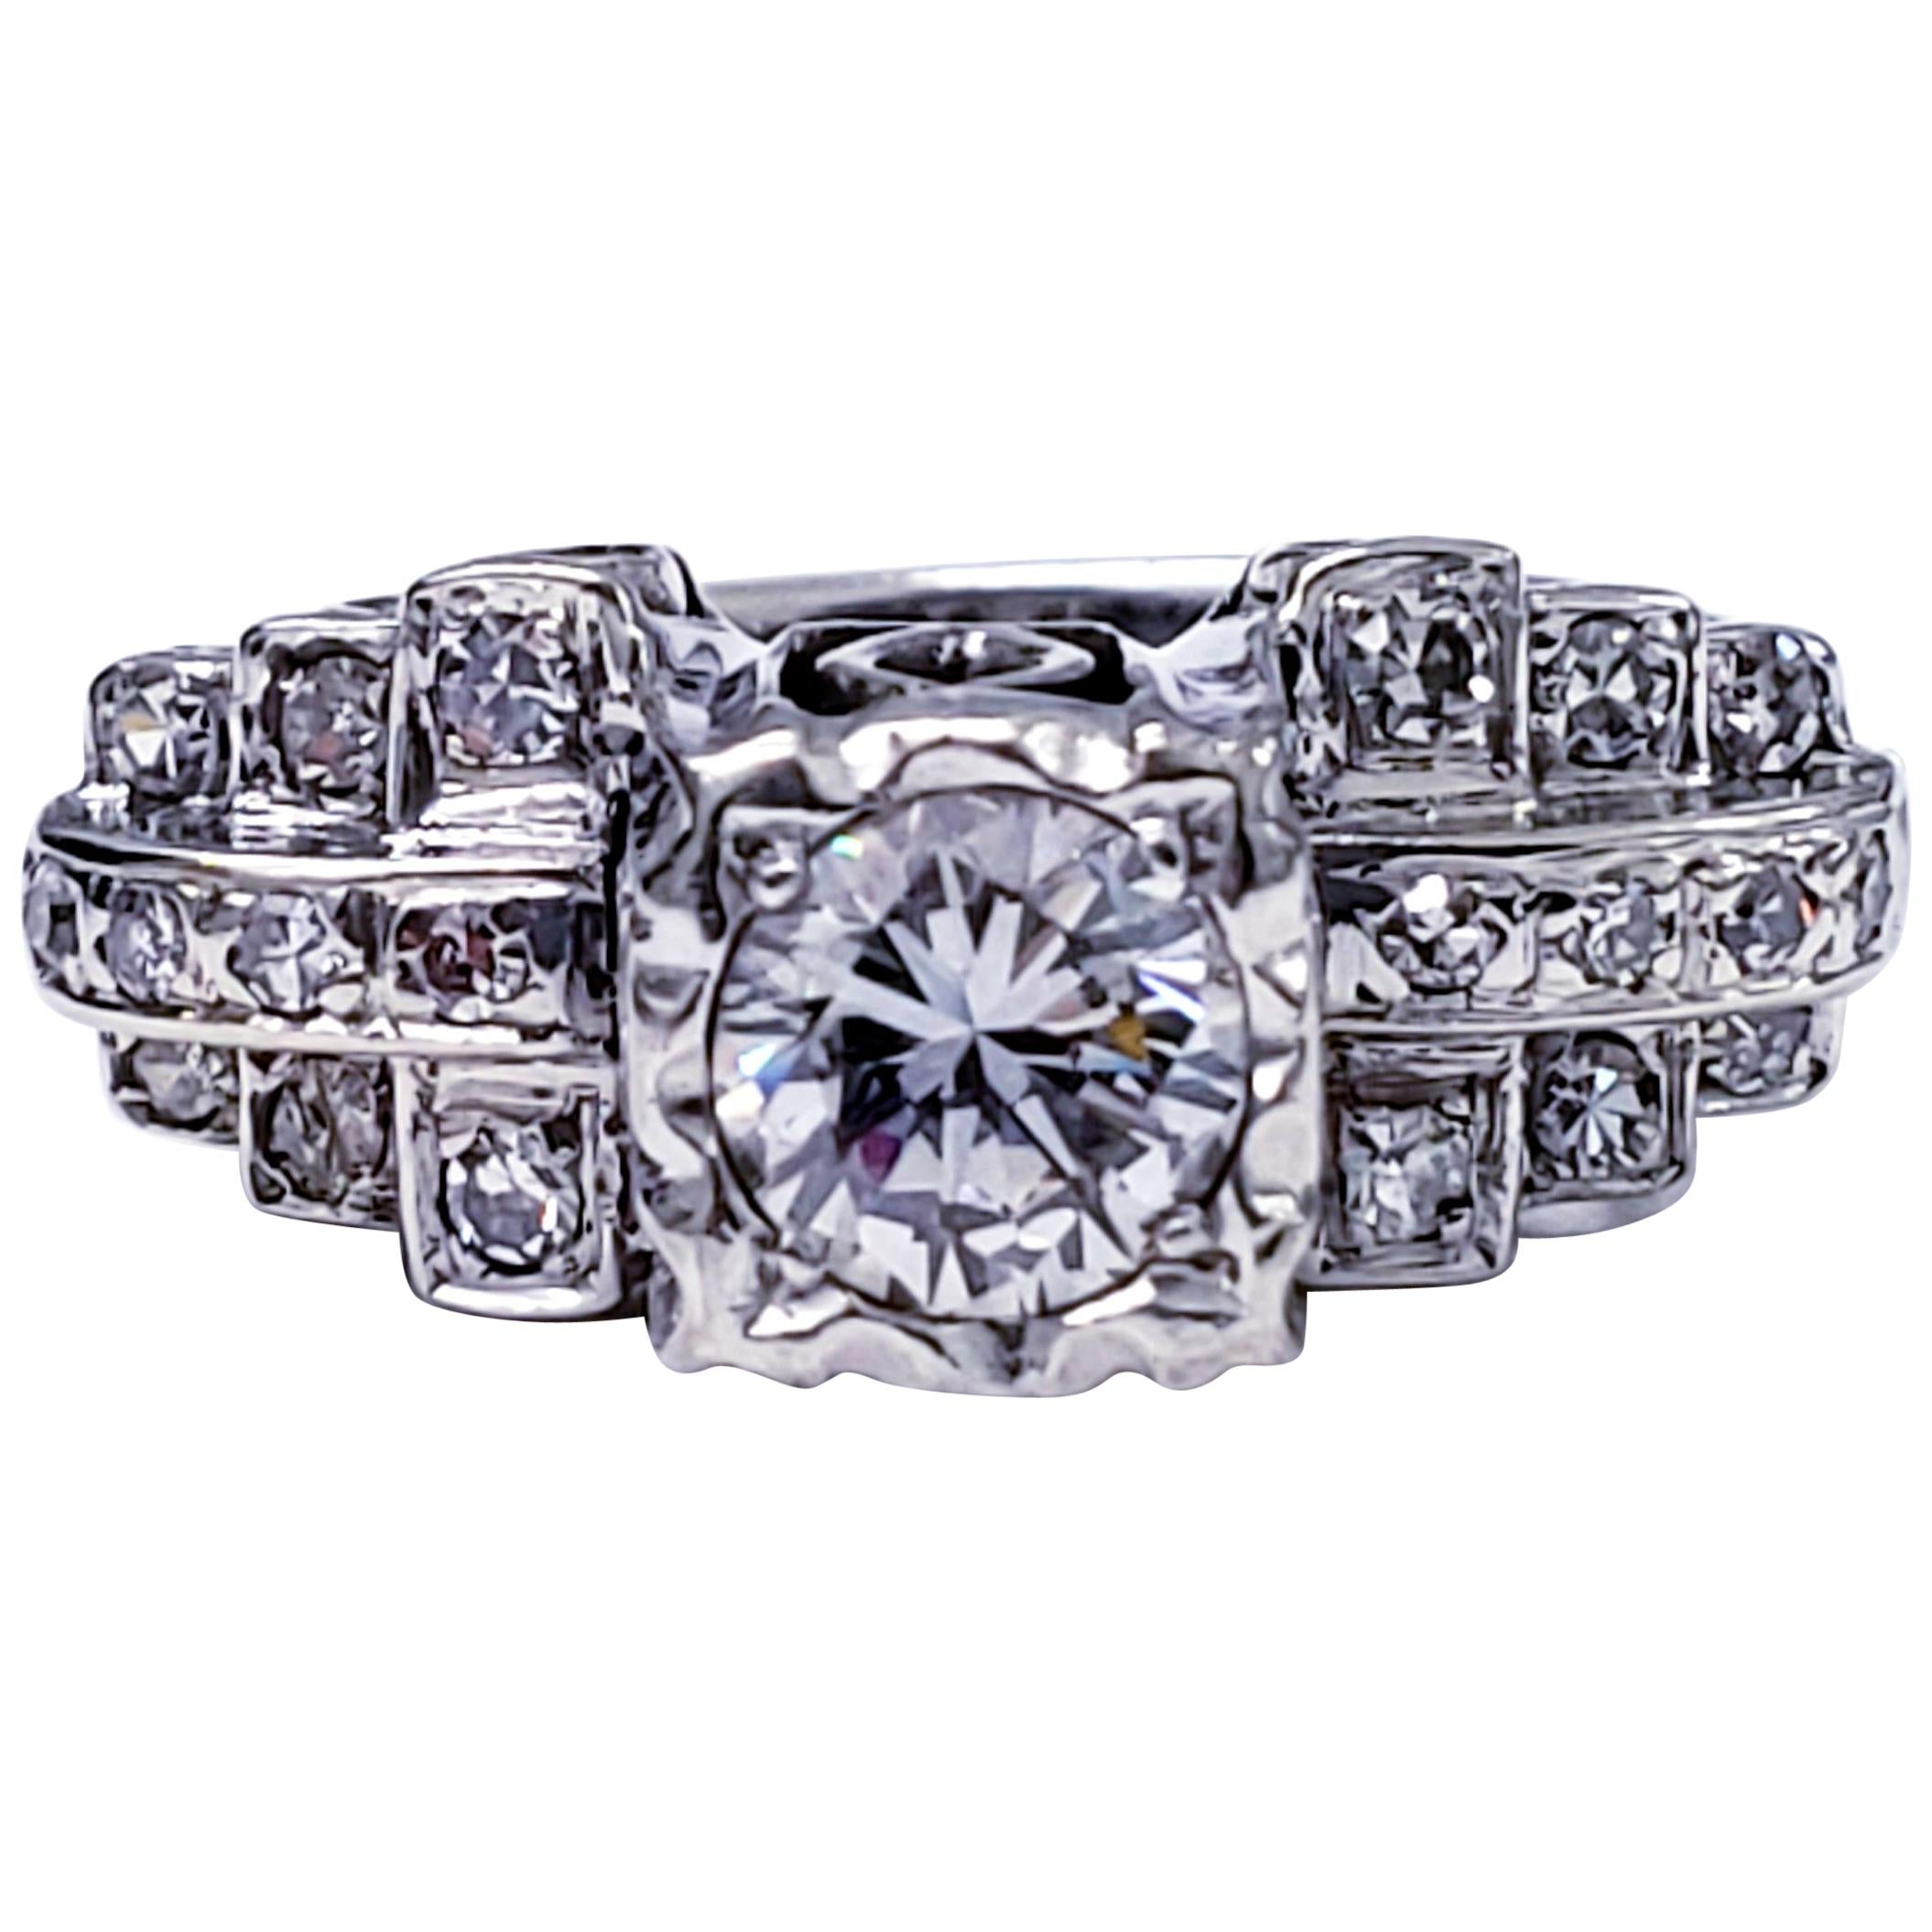 Antique Platinum 1.25 Carat Diamonds Wedding Ring For Sale